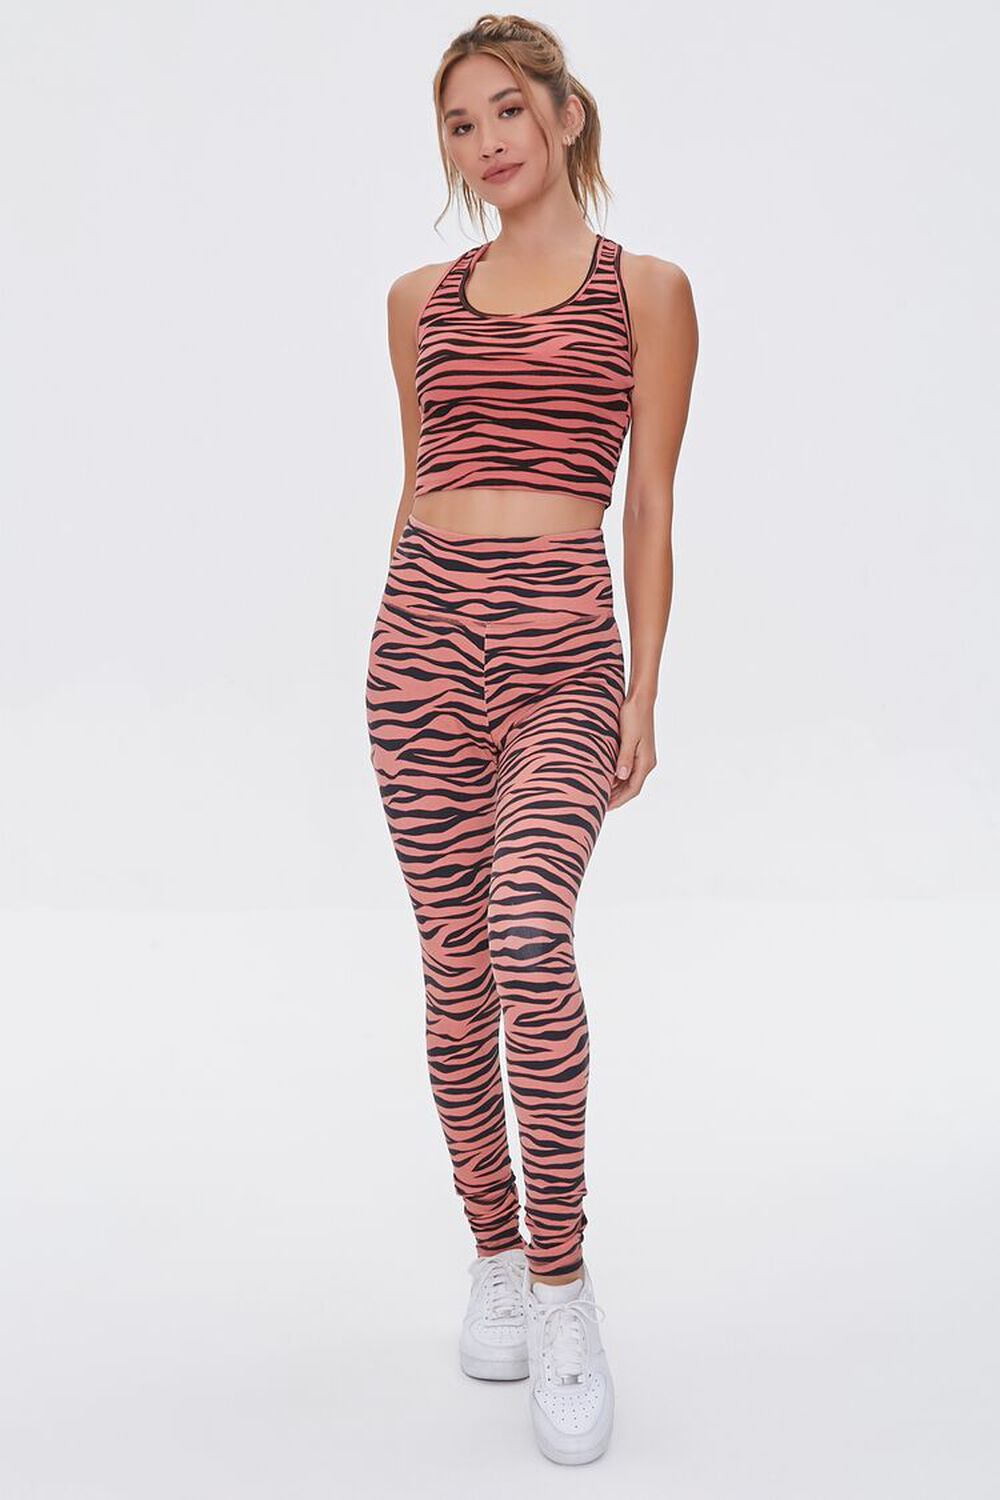 ROSE/BLACK Active Tiger Striped Leggings, image 1